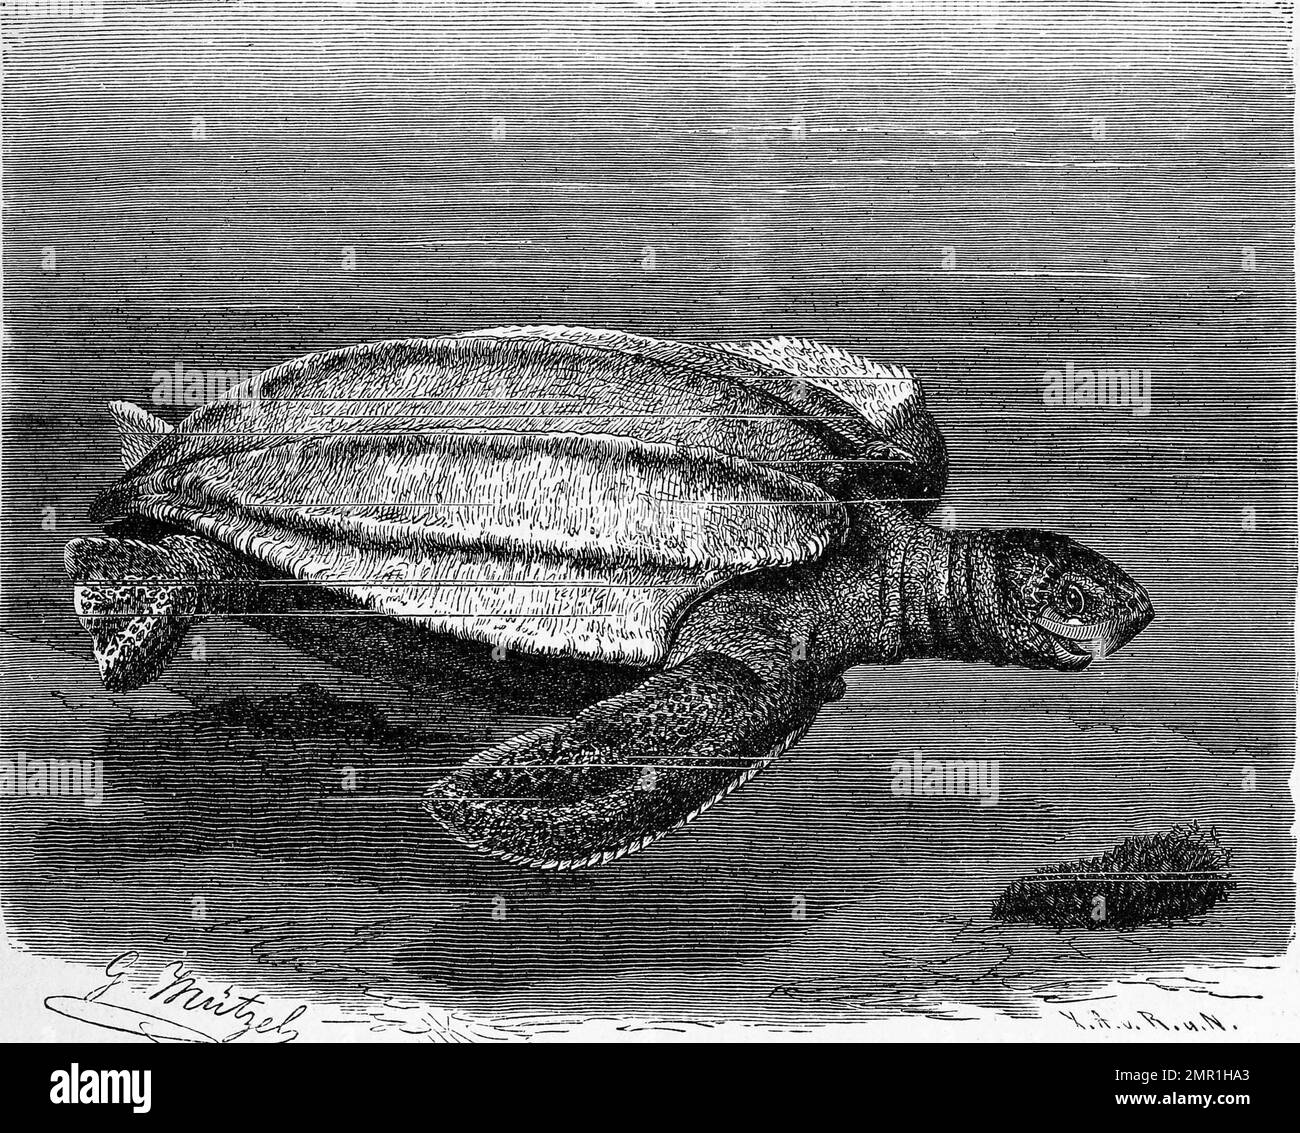 Reptilien, Lederschildkröte, Dermochelys coriacea ist die größte lebende Schildkröte, Historisch, digital restaurierte Reproduktion von einer Vorlage aus dem 19. Jahrhundert Stock Photo